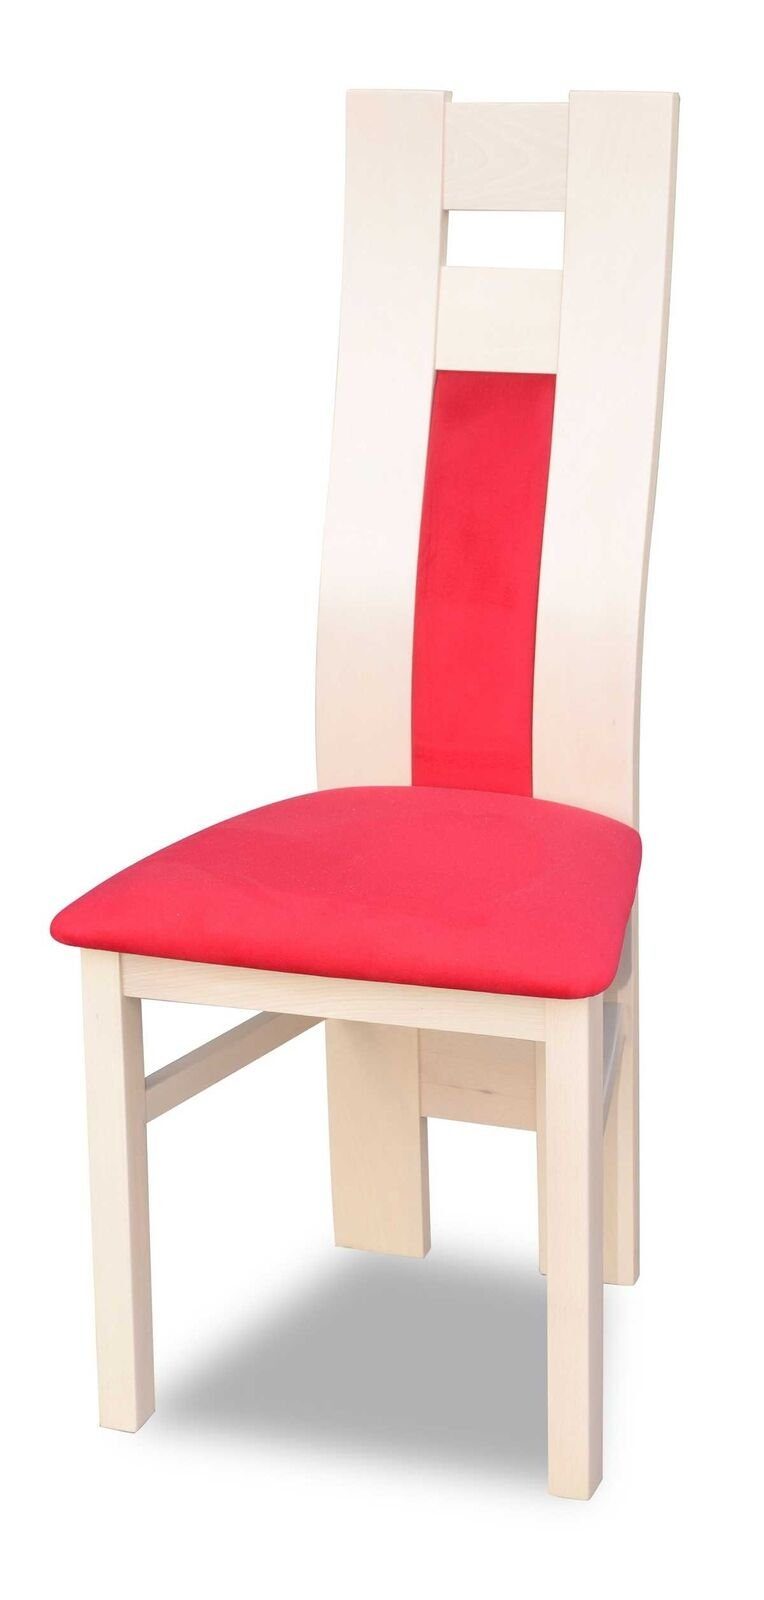 JVmoebel Stuhl Möbel Stühle Esszimmerstuhl Stuhl Design Polster Luxus Einrichtung Neu (1 St) Weib